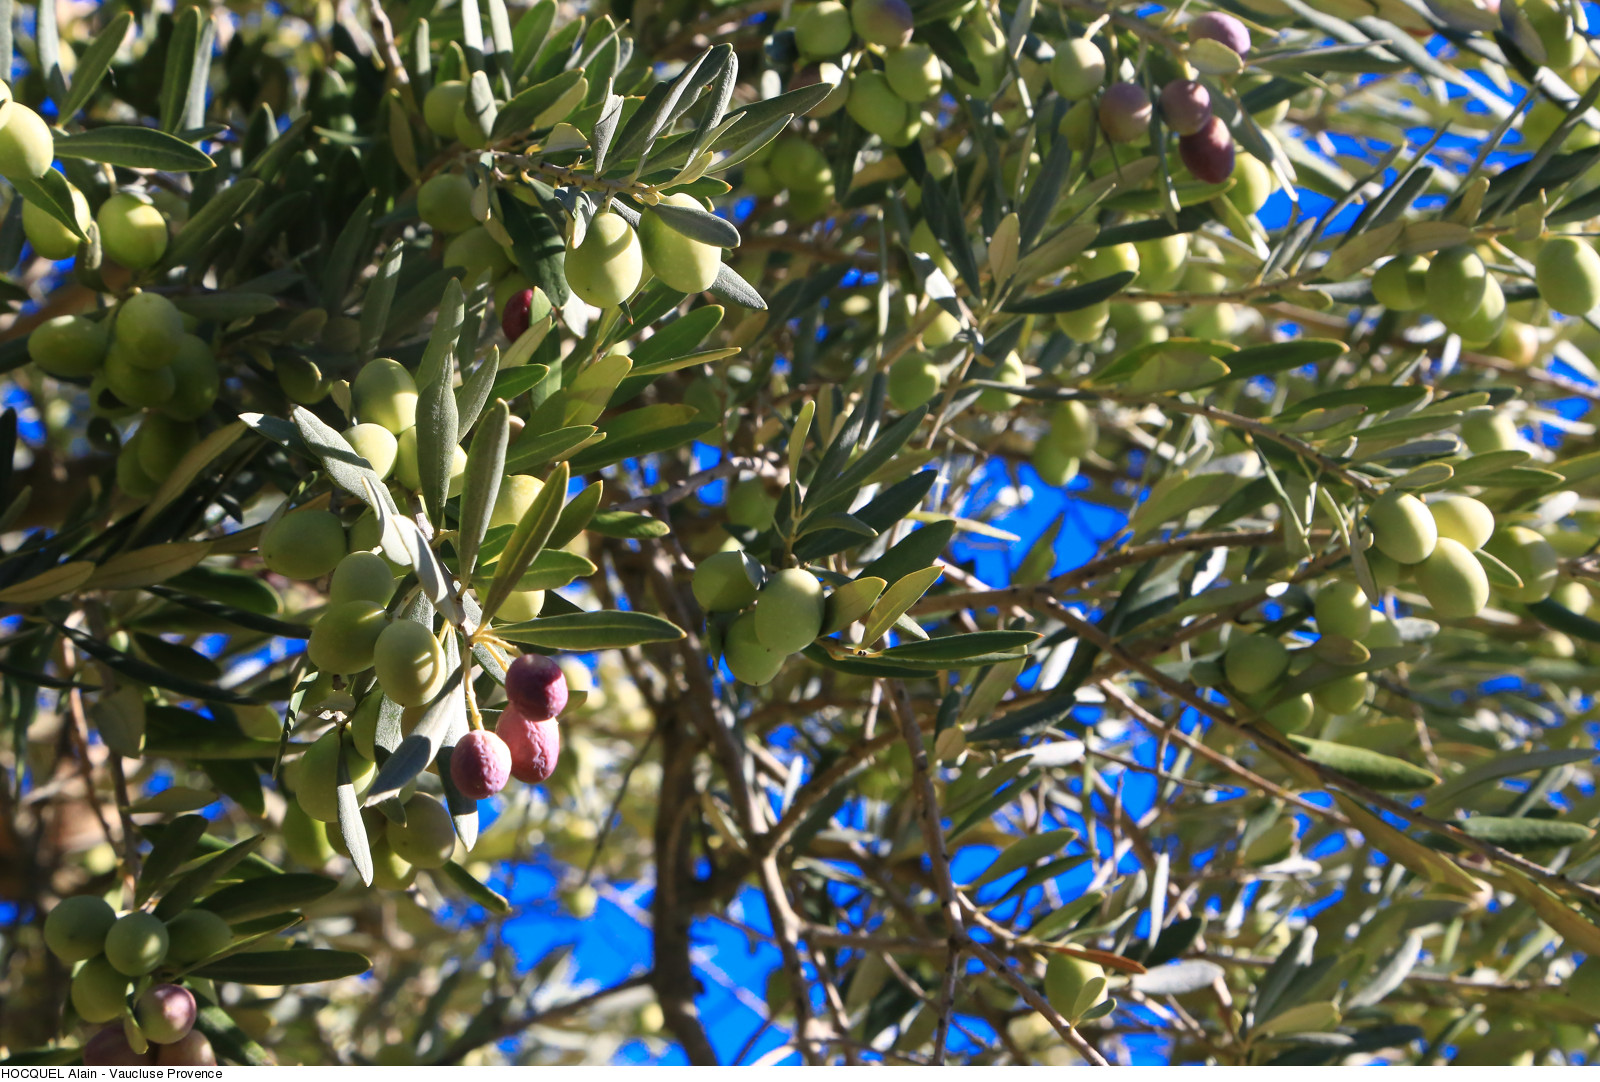 Olives sur l'olivier